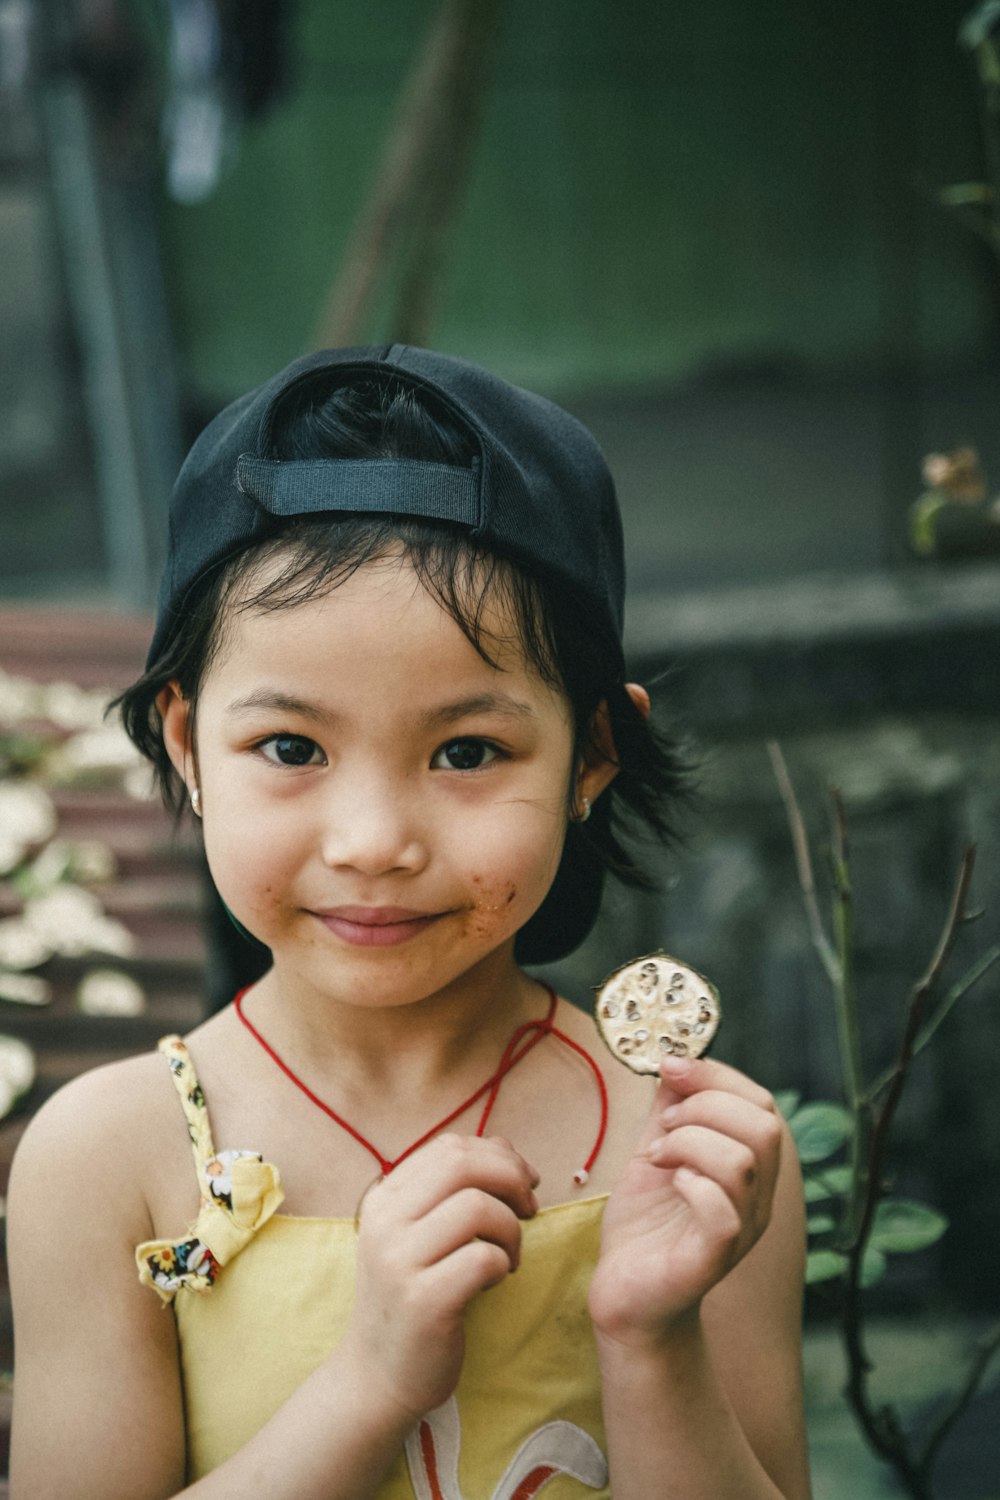 fotografia do retrato da menina segurando a moeda redonda